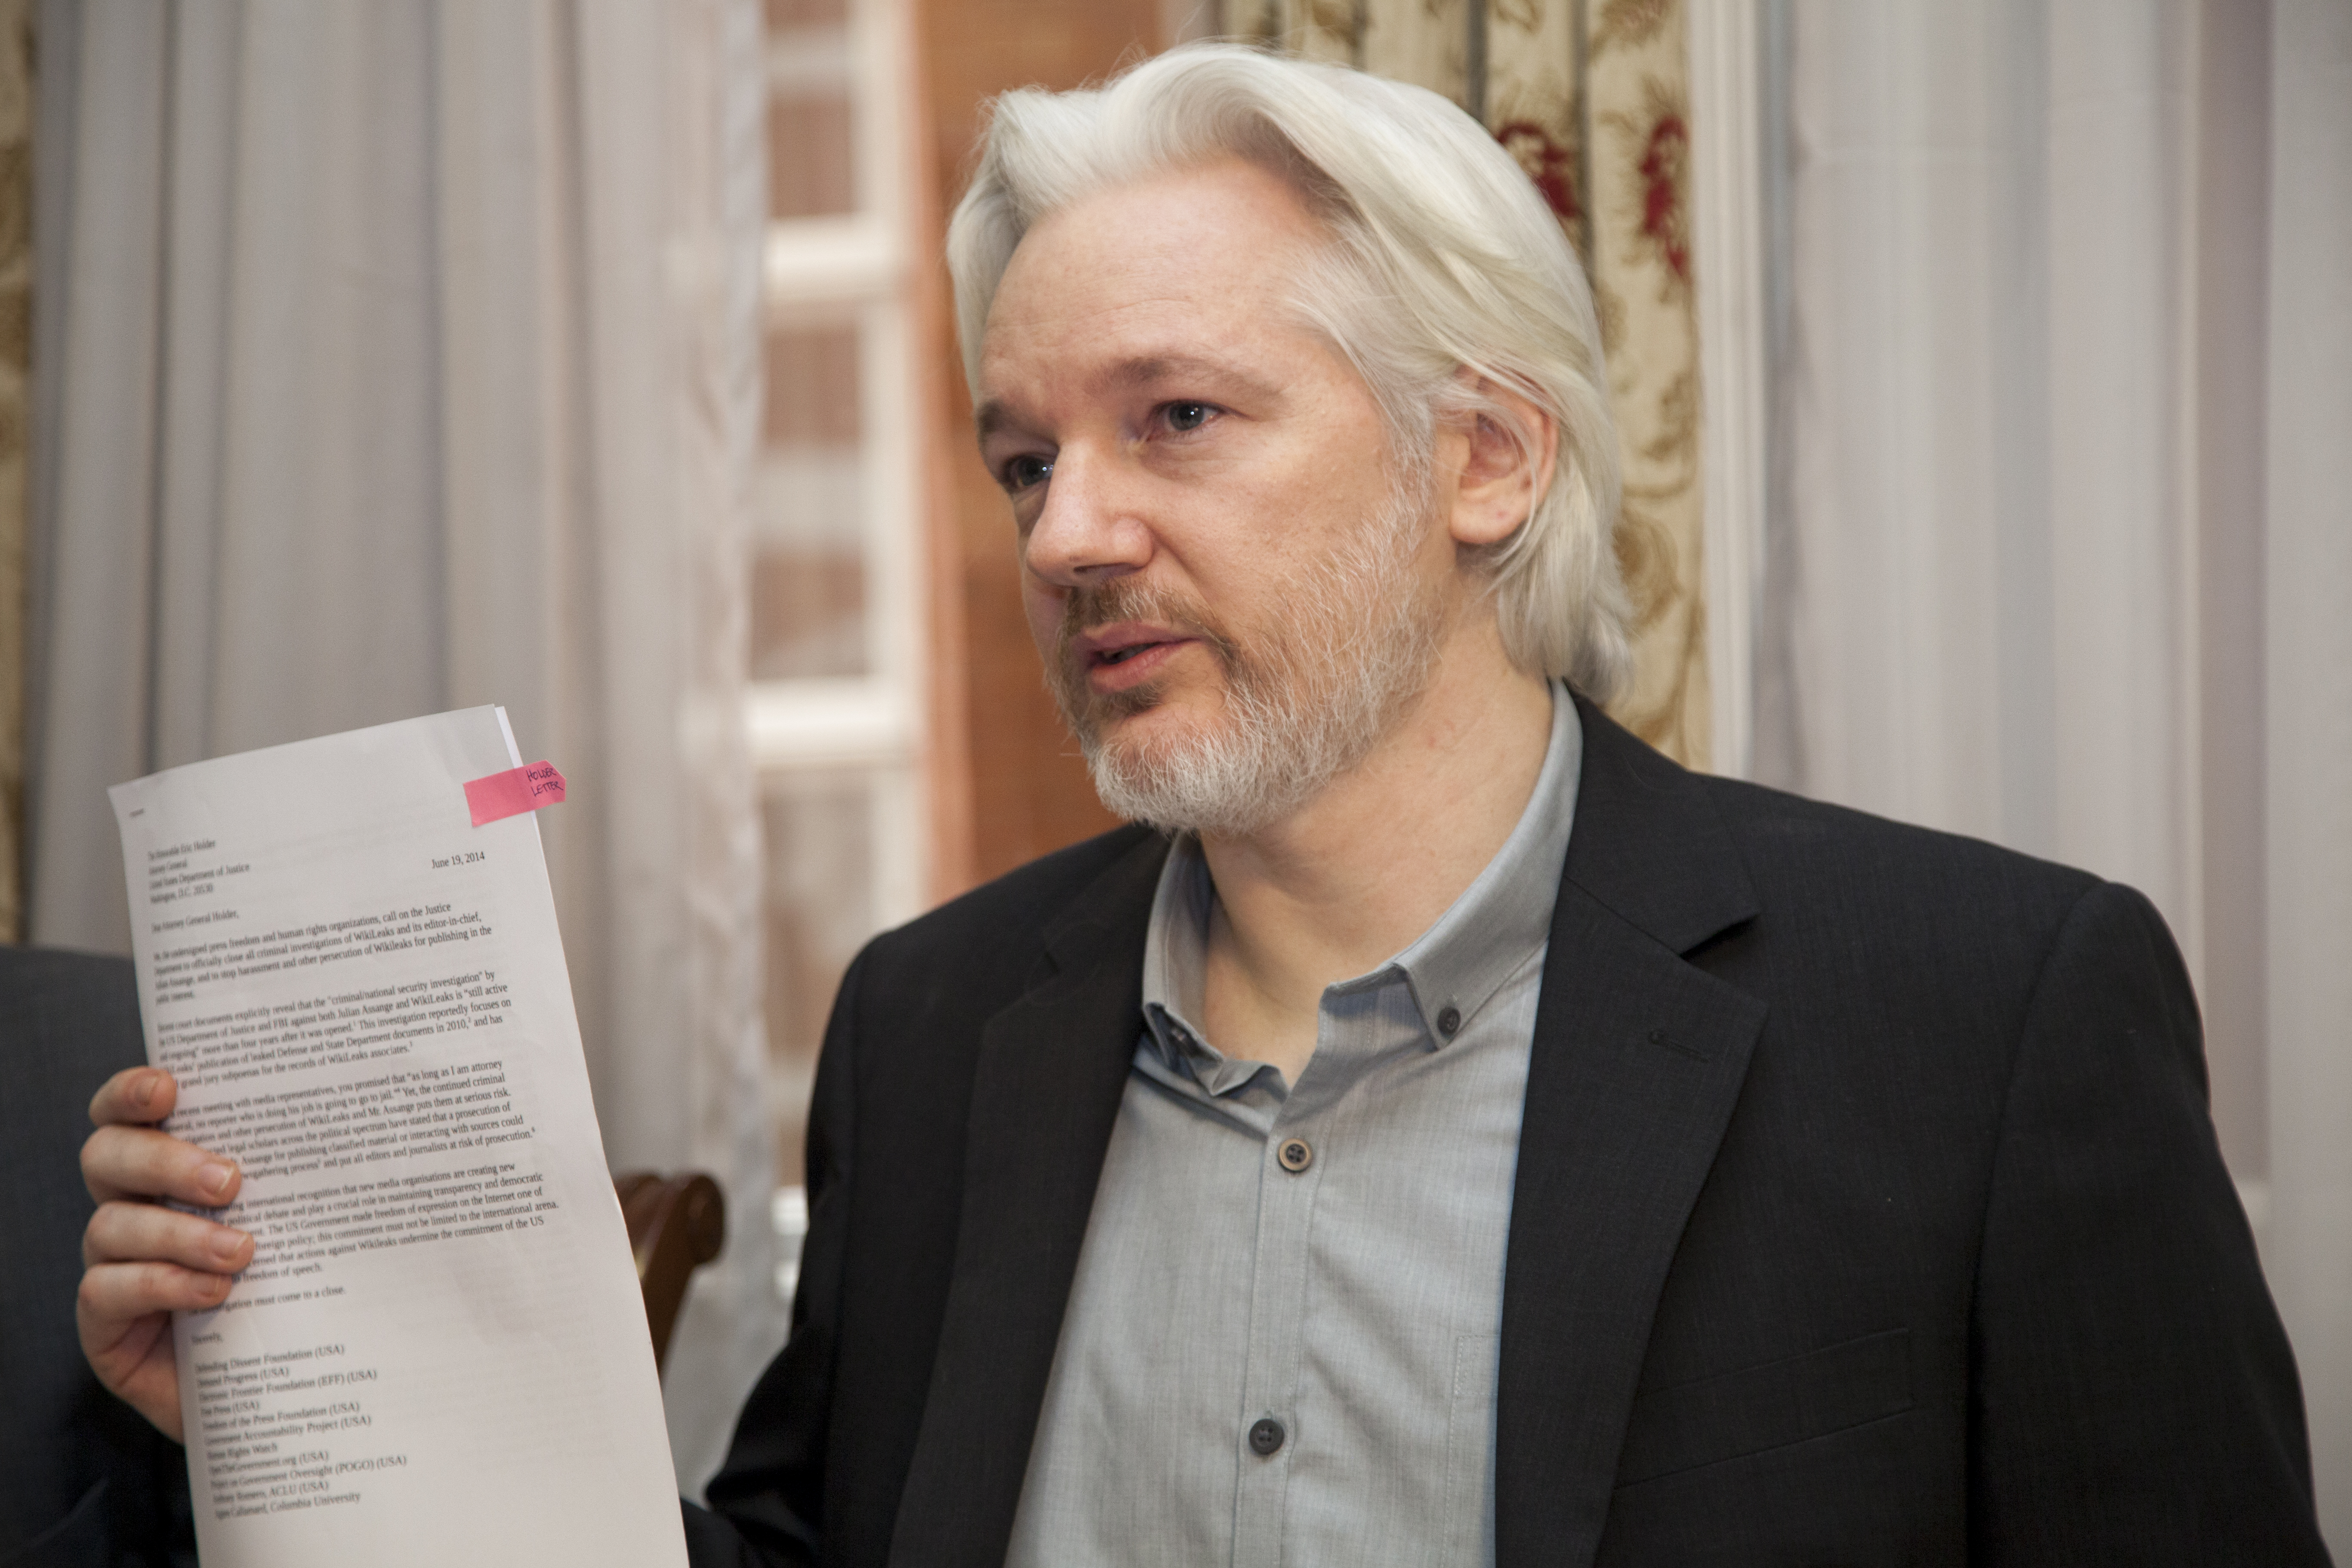 Julian Assange steht in der ecuadorianischen Botschaft in London und zeigt ein Dokument in die Kamera. Er hat lange weiße Haare und einen Bart